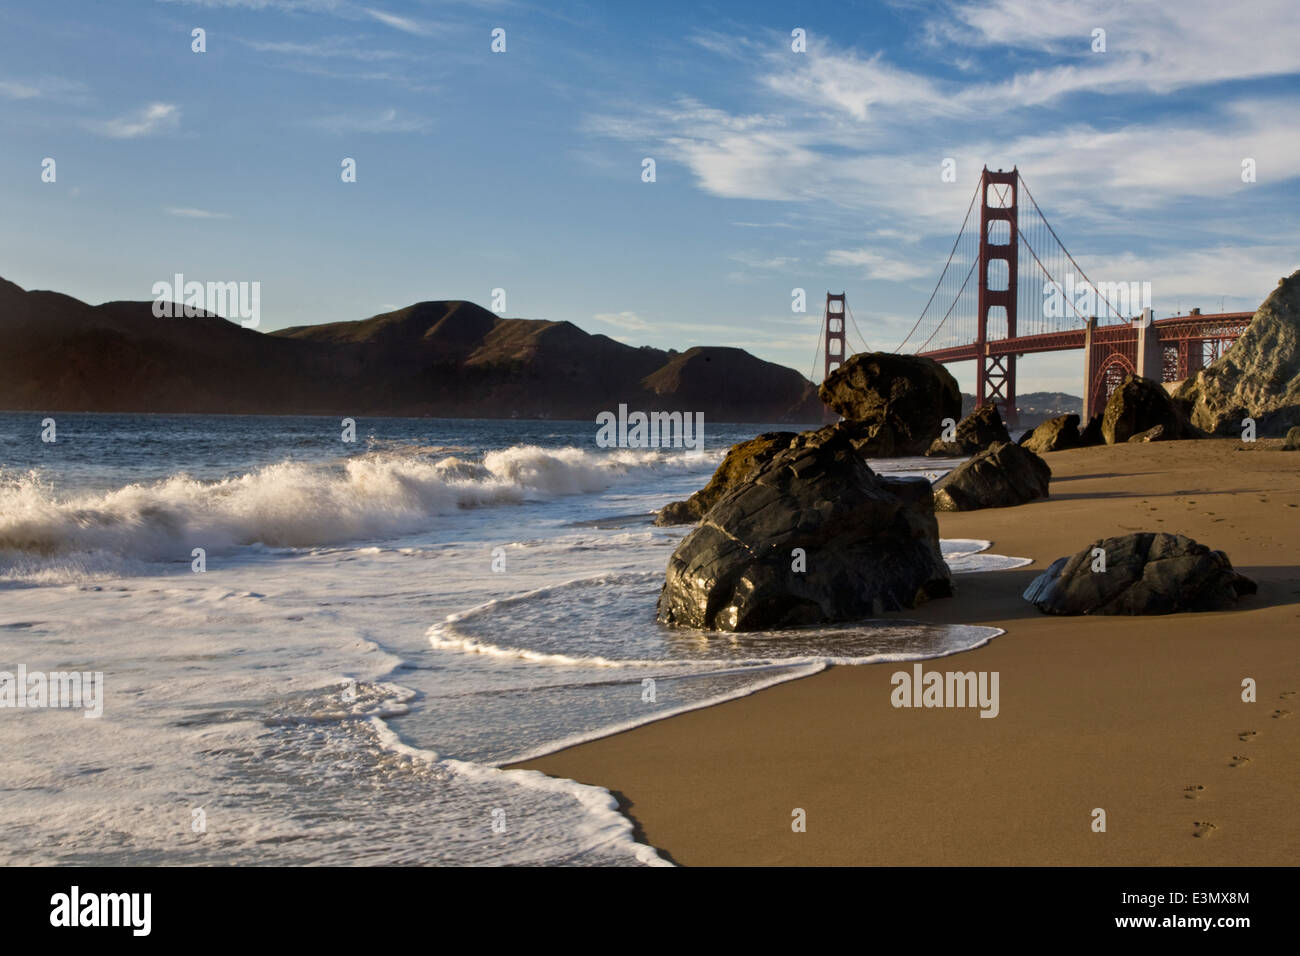 THE GOLDEN GATE BRIDGE as seen from BAKER BEACH - SAN FRANCISCO, CALIFORNIA Stock Photo